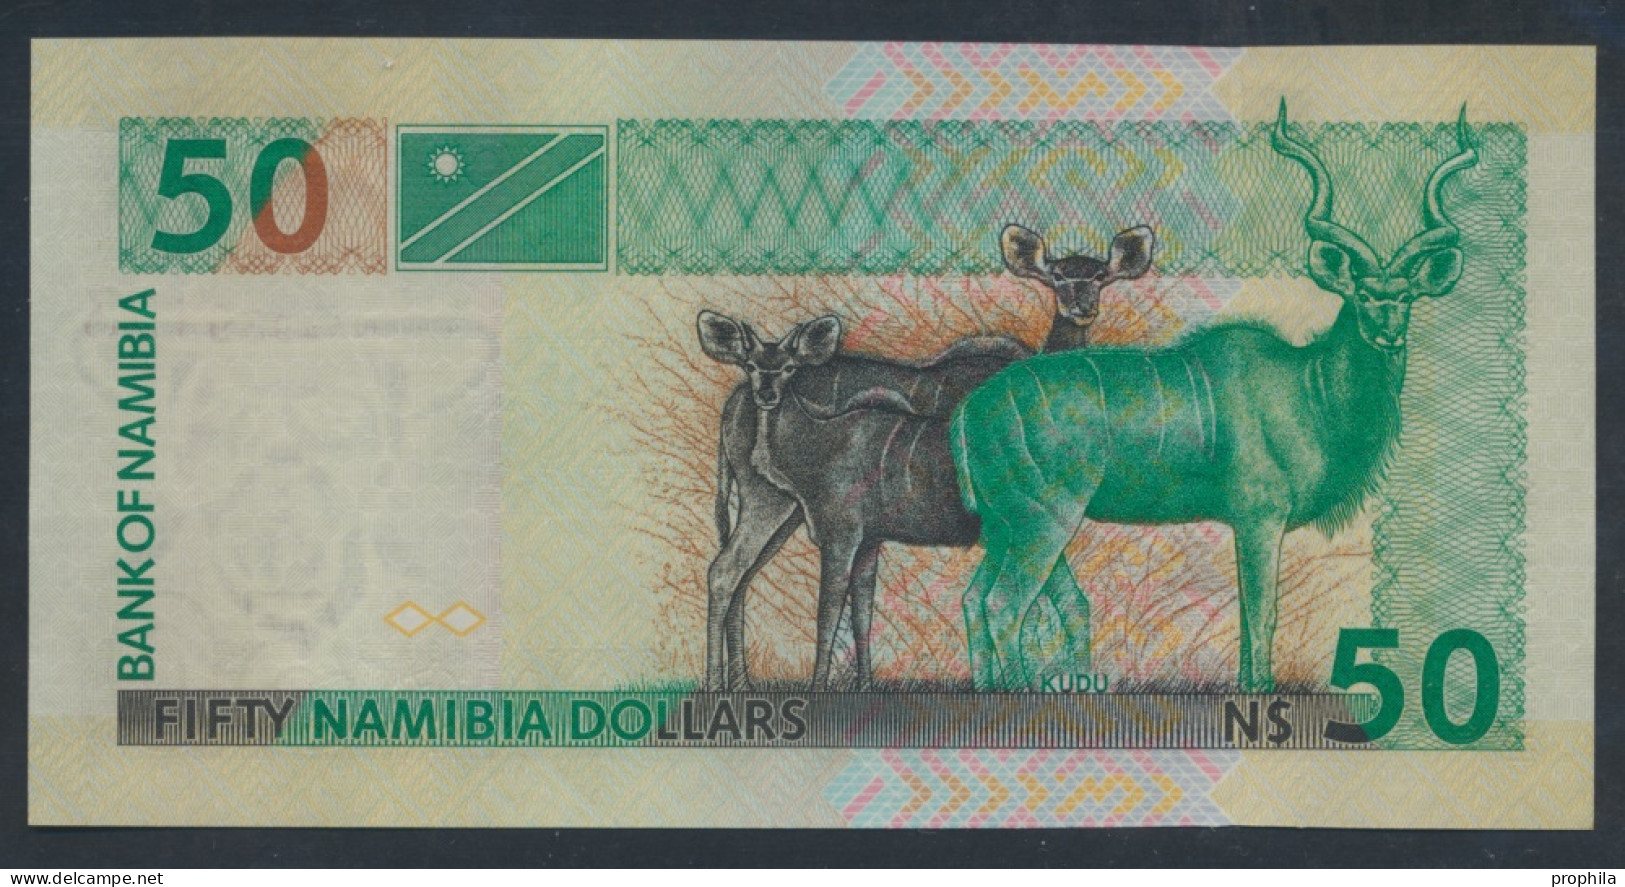 Namibia - Südwestafrika Pick-Nr: 8b Bankfrisch 2003 50 Namibia Dollars (9855723 - Namibia